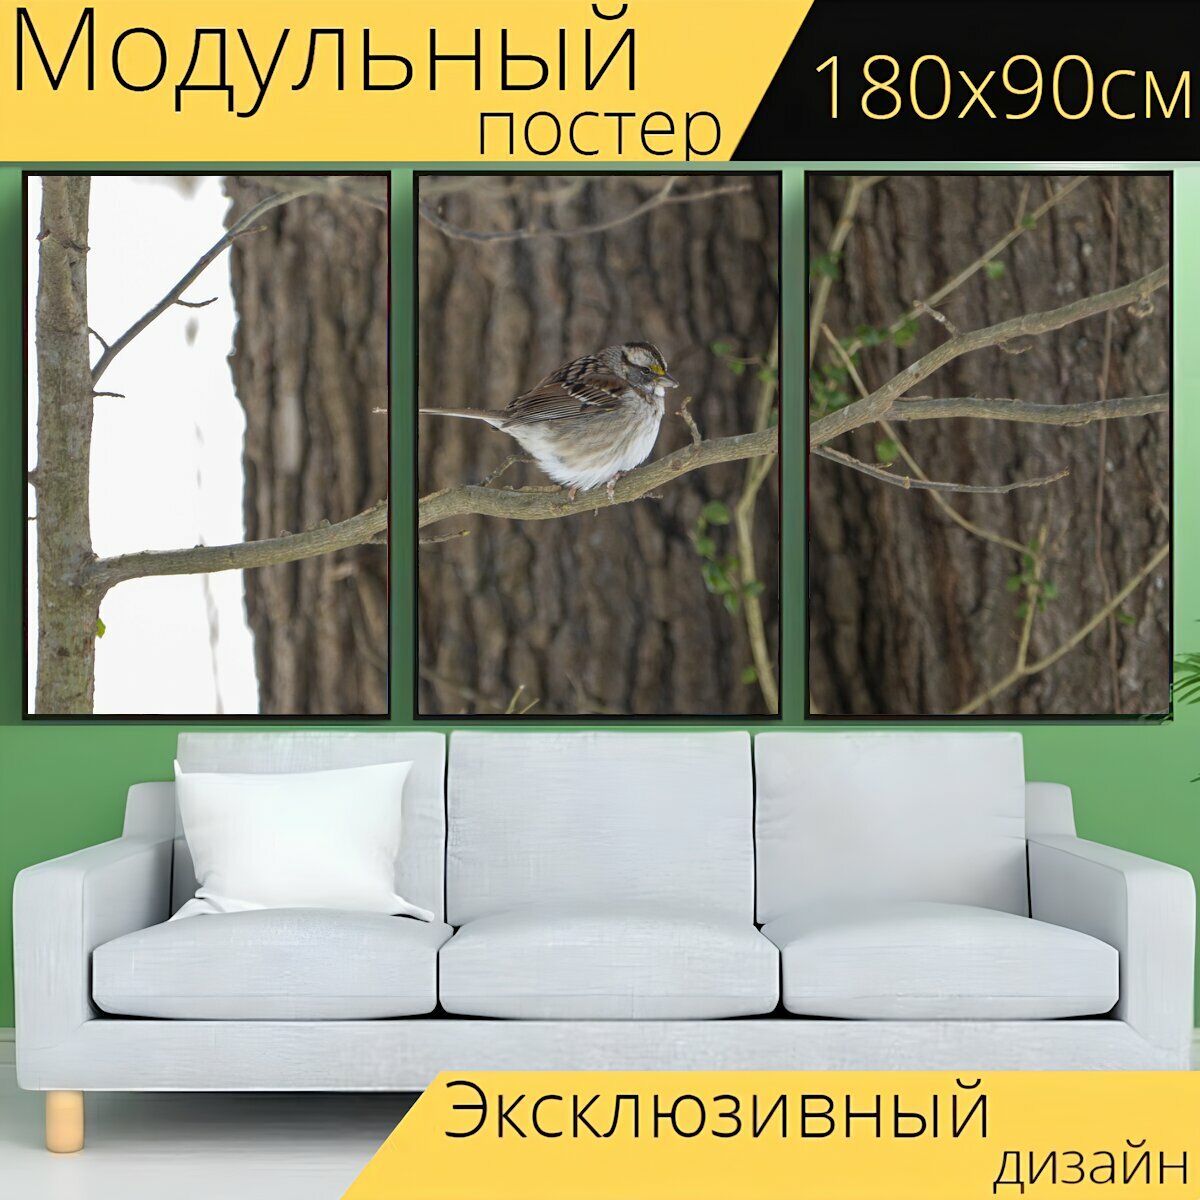 Модульный постер "Птица, птичий, дикая природа" 180 x 90 см. для интерьера